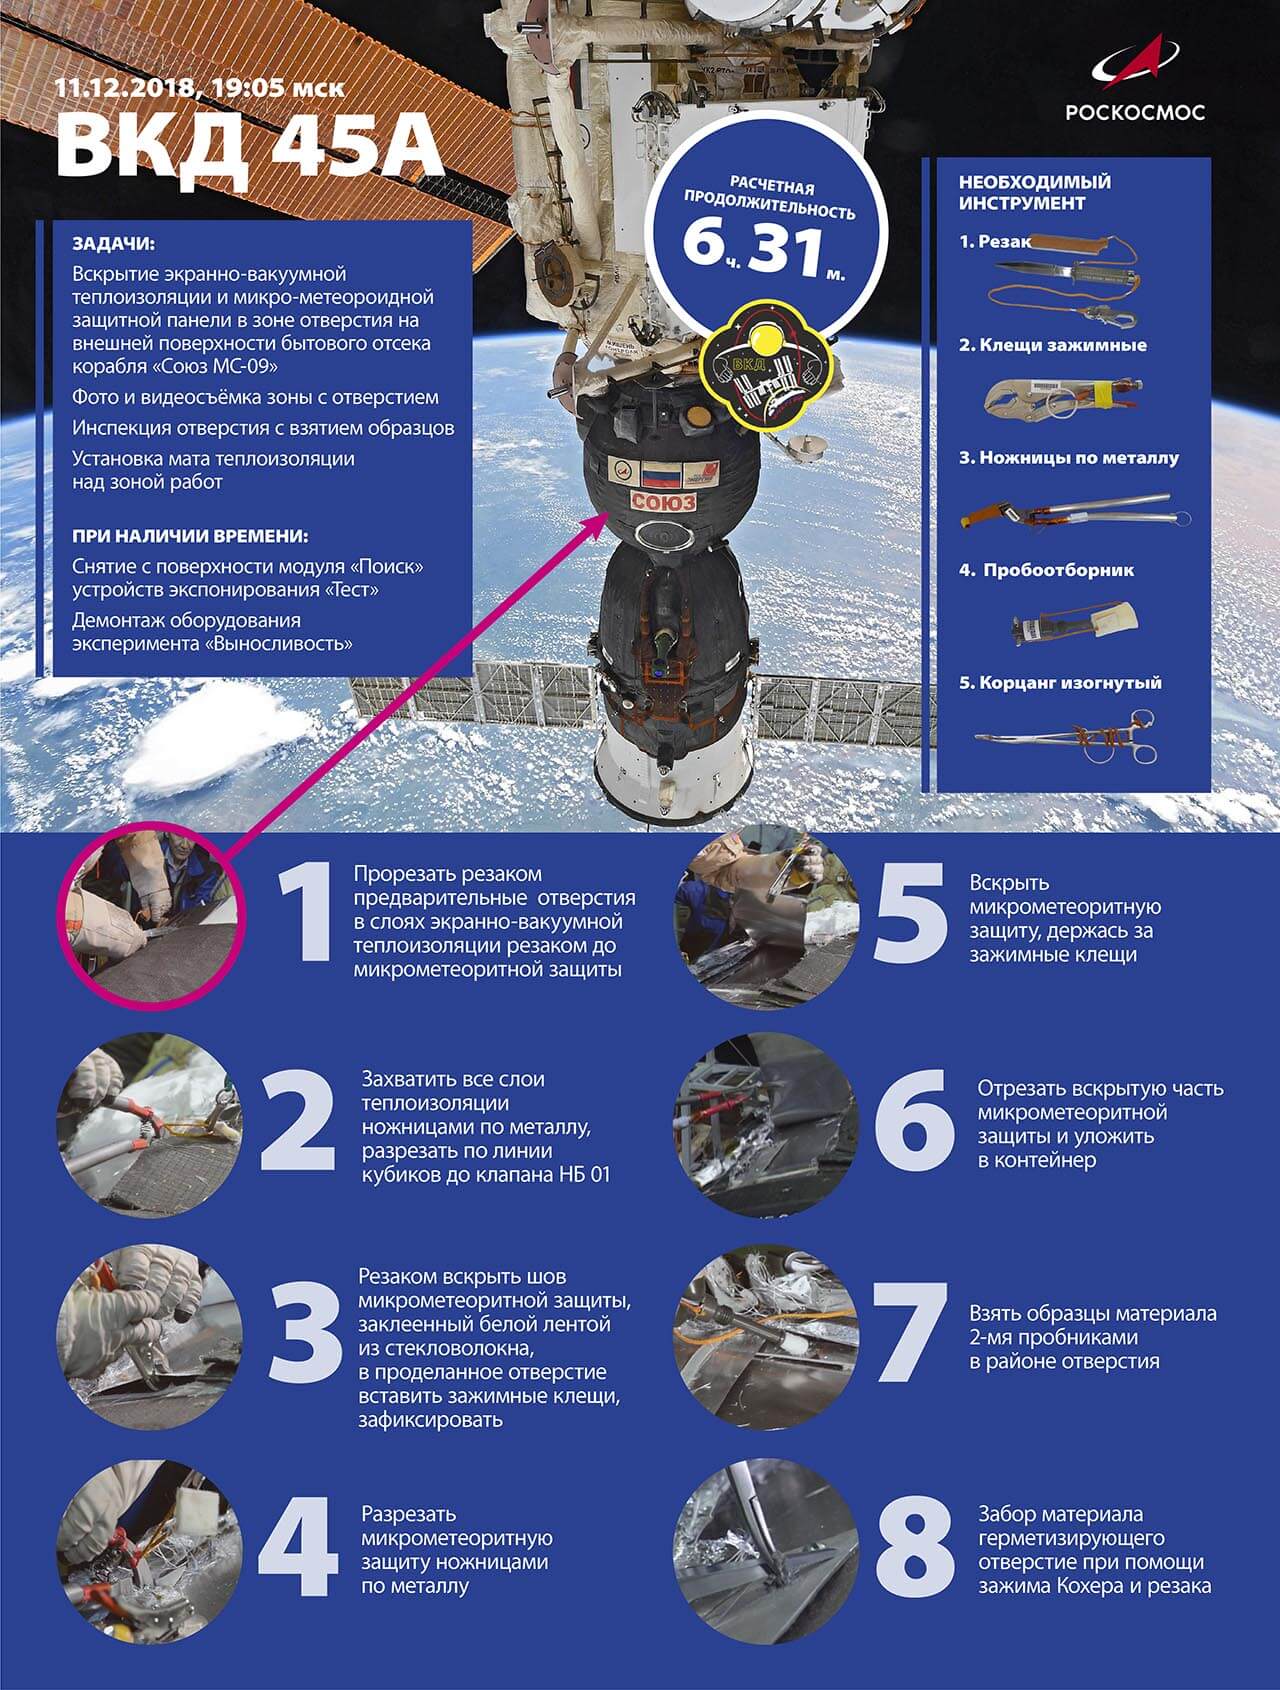 Прямая трансляция: Российский экипаж МКС вышел в открытый космос для проверки дыры в «Союзе». Фото.